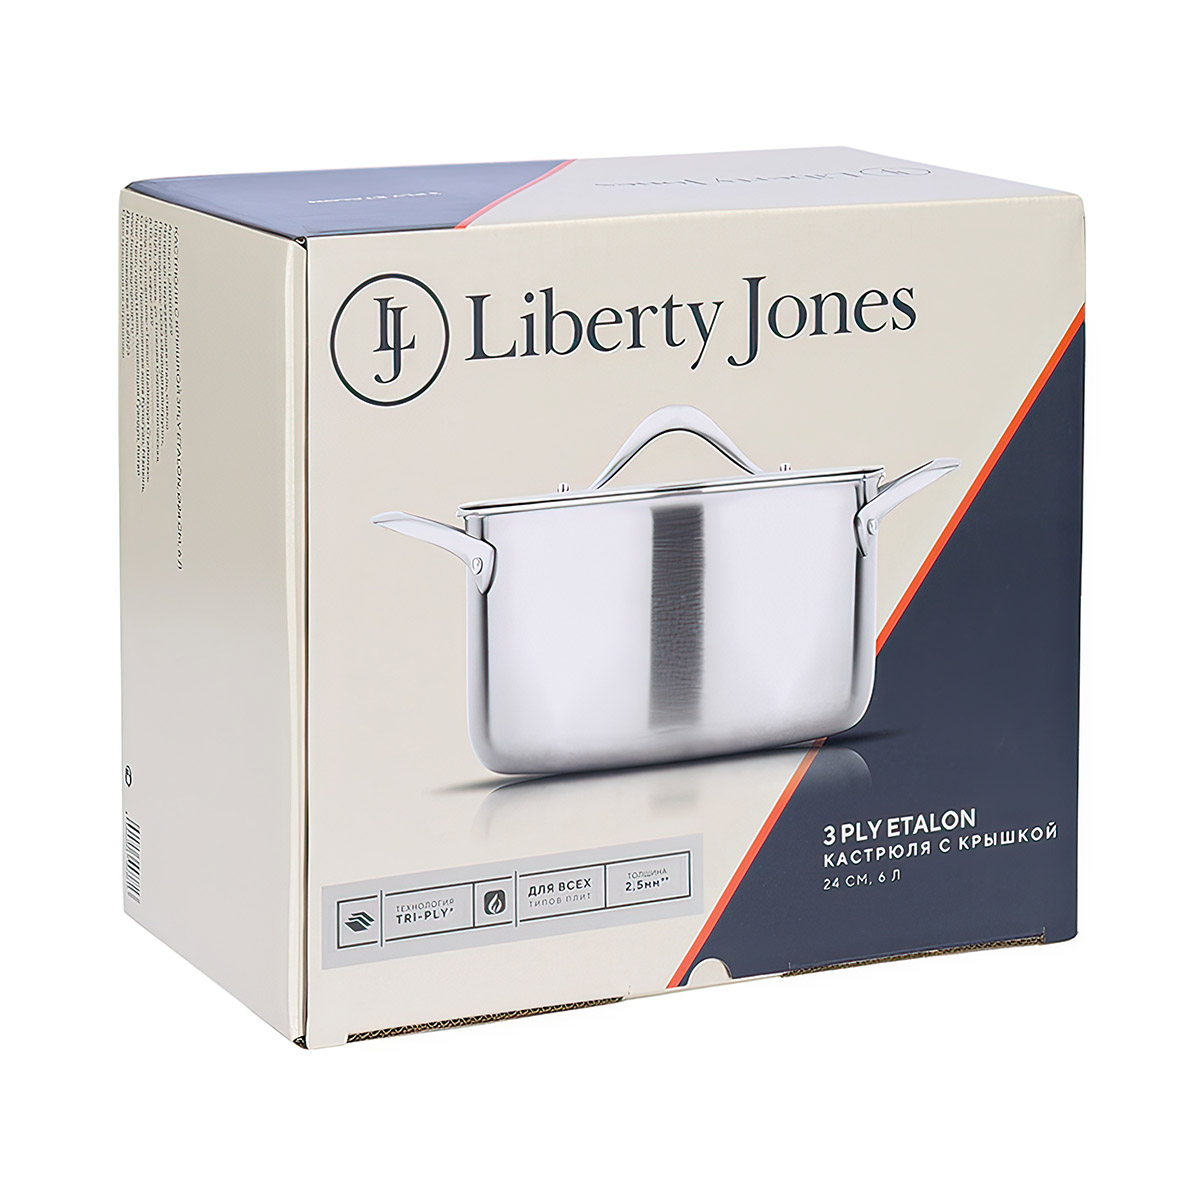 Кастрюля с крышкой Liberty Jones 3Ply Etalon 6л Liberty Jones LJ0000229, цвет стальной - фото 8